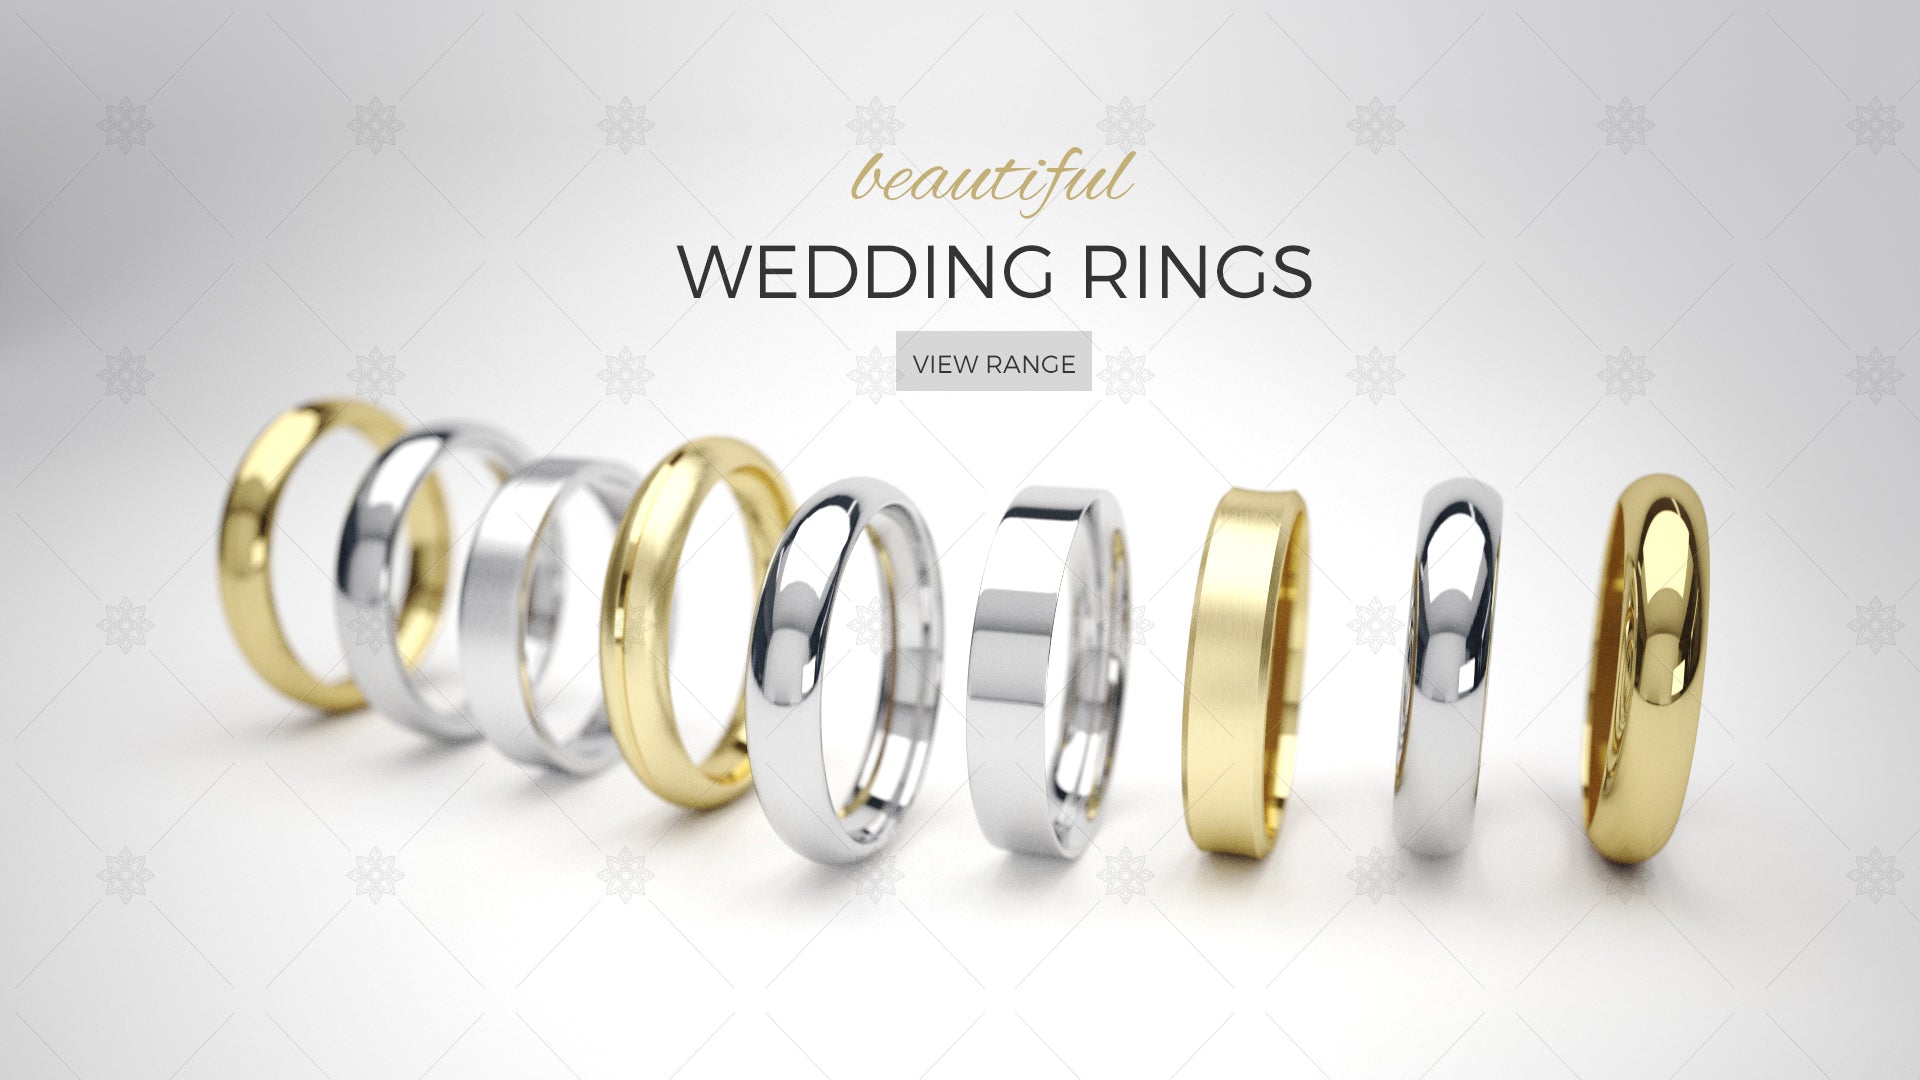 wedding rings website banner design